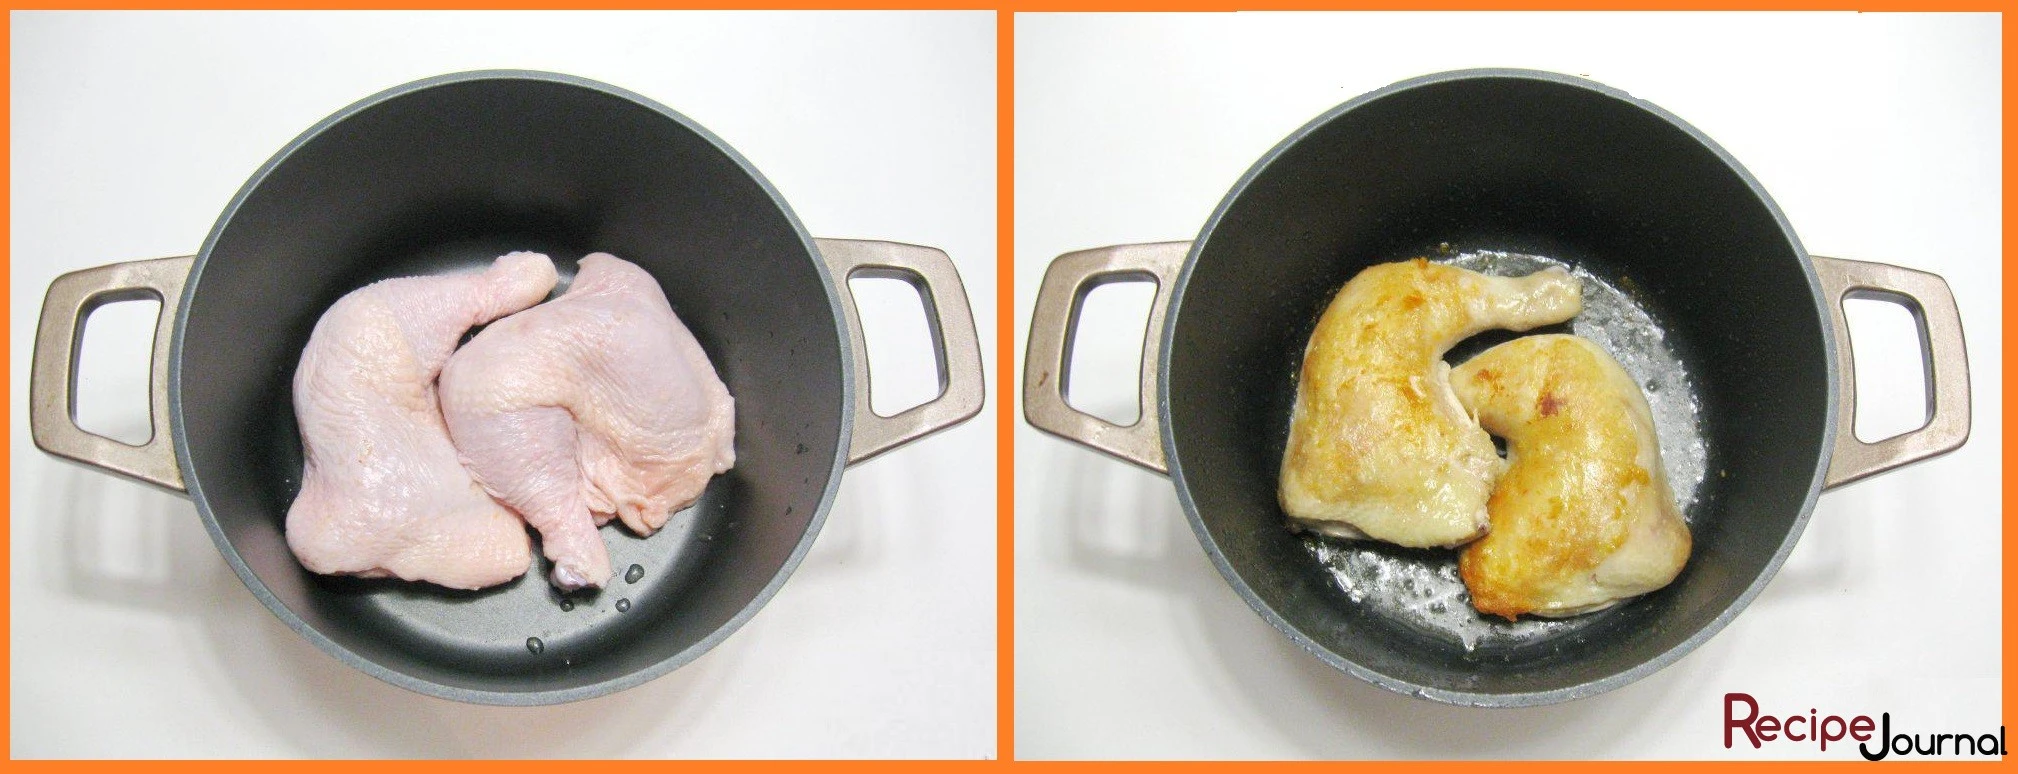 Помоем курицу, разделаем её, в этом рецепте готовим жаркое  из окорочков. Посолим и поперчим, затем обжарим   в подсолнечном масле до золотистой корочки с обеих сторон.